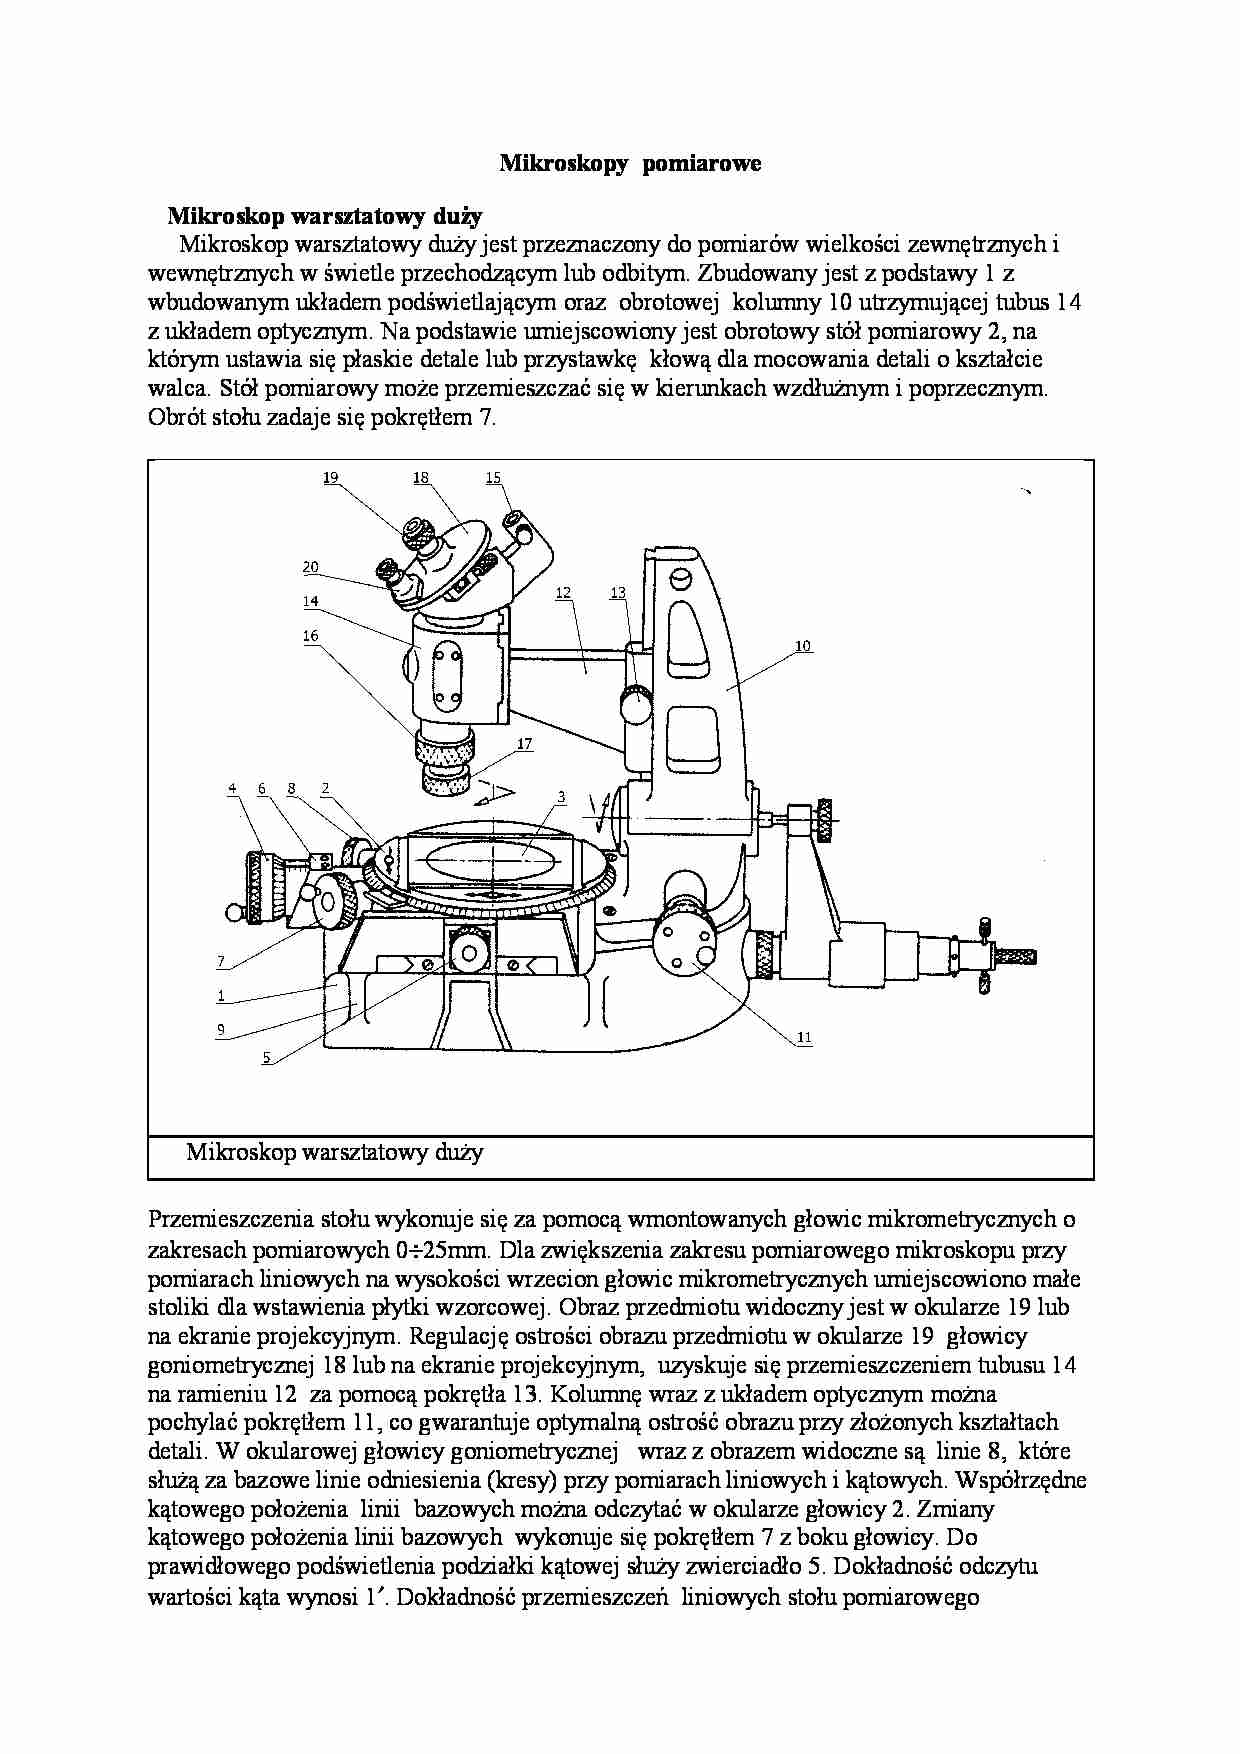 Meteorologia - mikroskopy  pomiarowe - strona 1